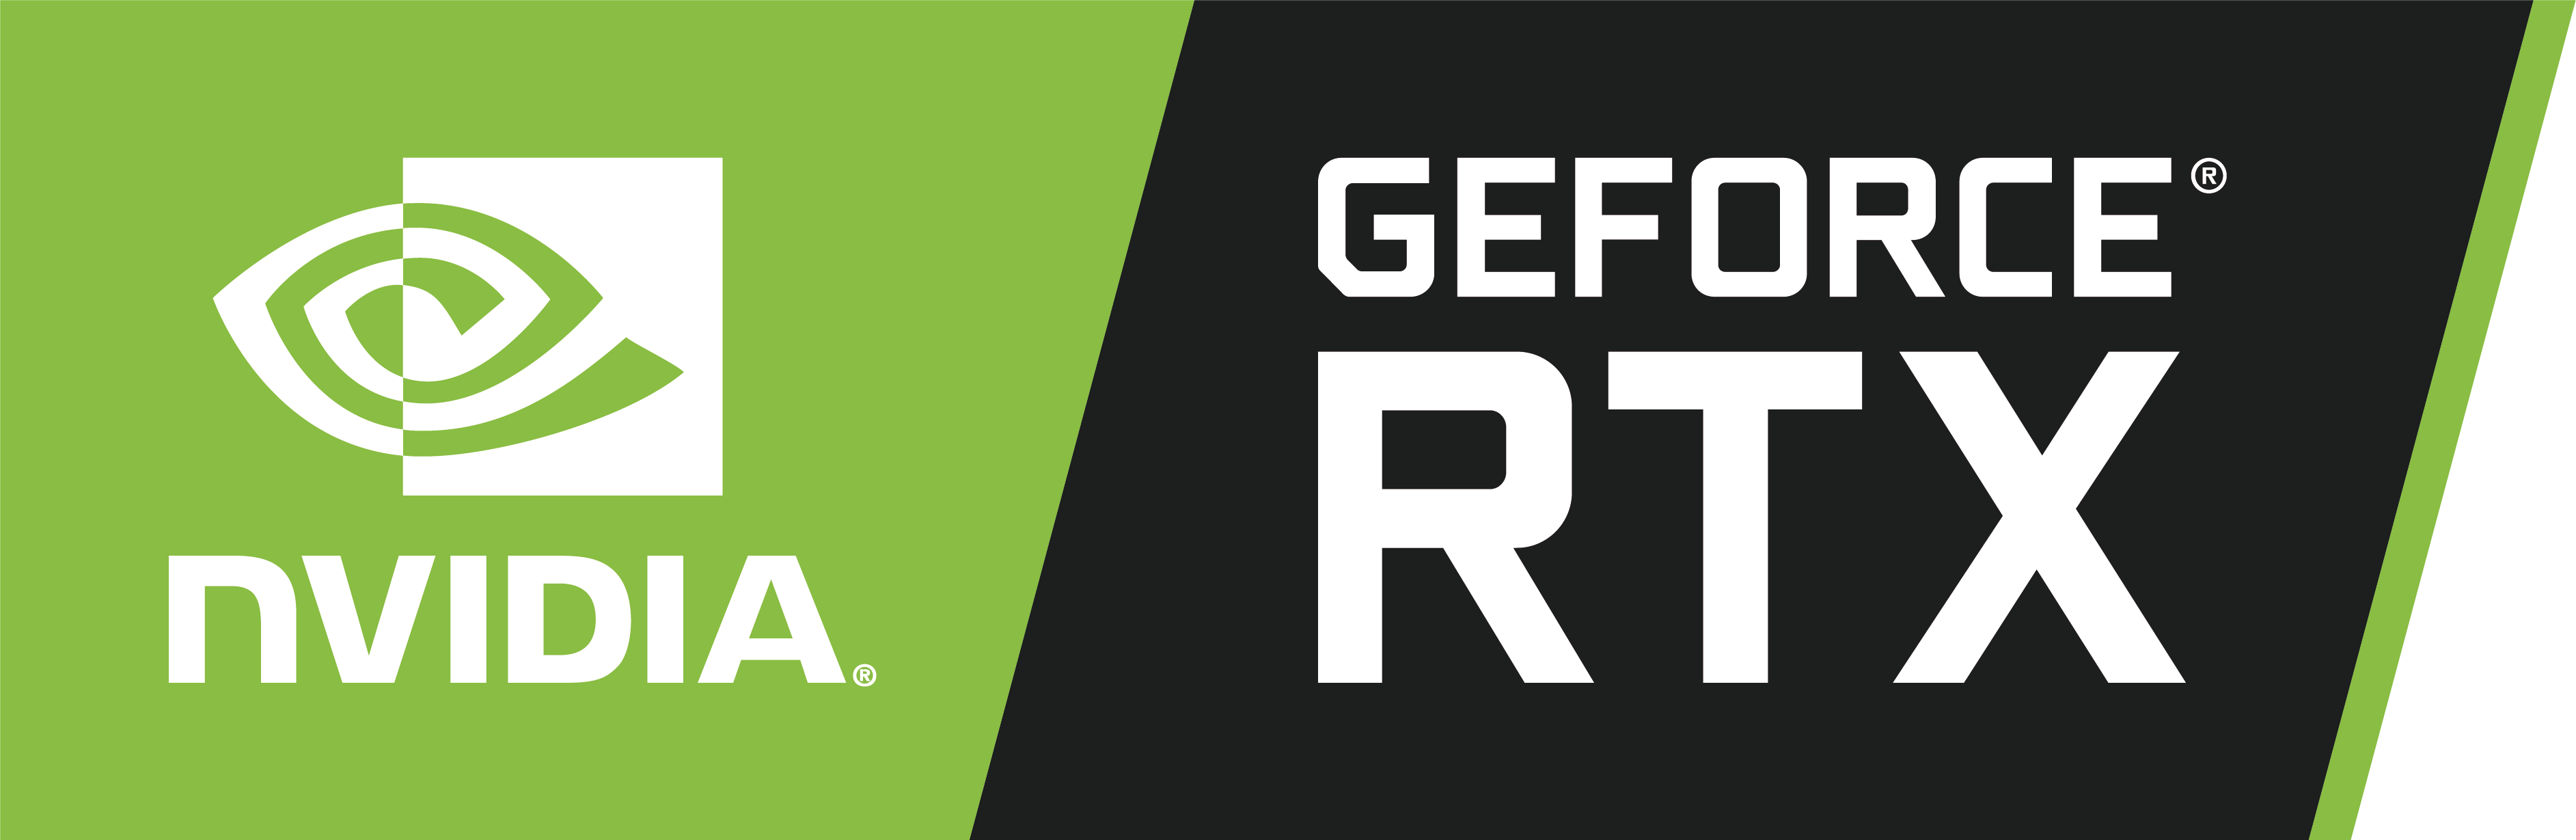 nvidia geforce rtx logo